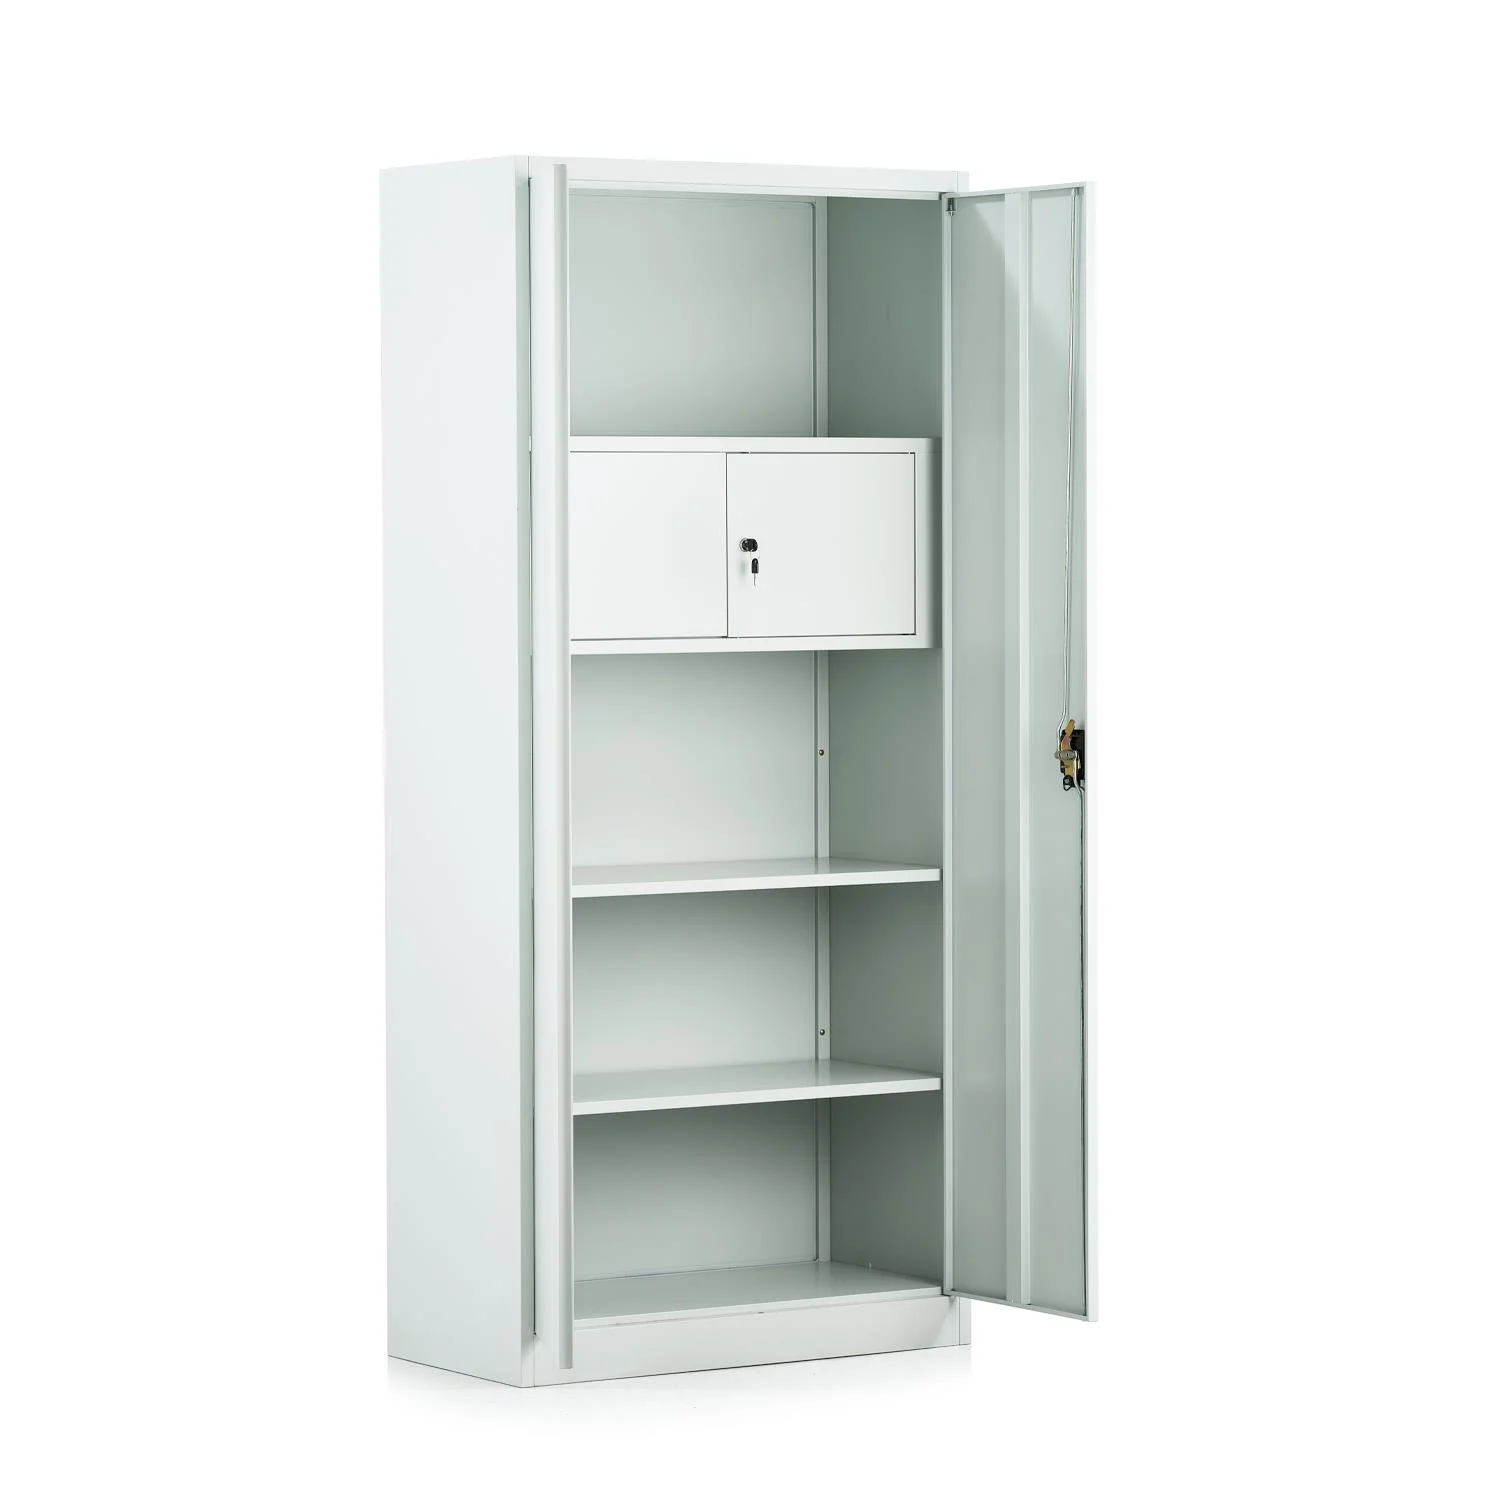 Cupboard KD-099 Swing Door with Four Shelves